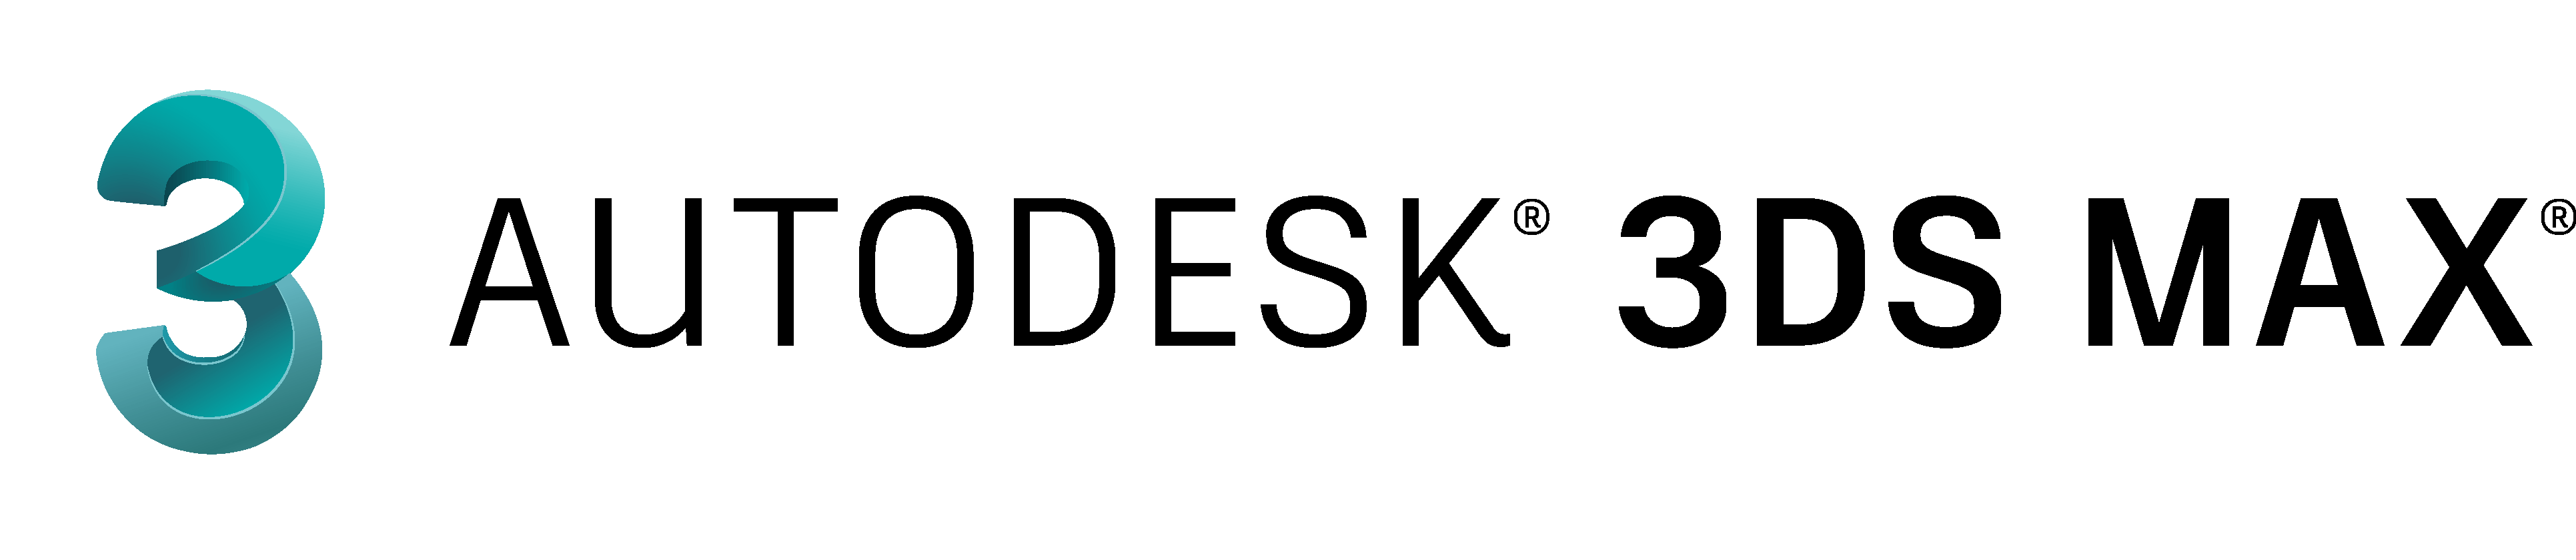 Интернет операция 3ds. Autodesk 3d Max logo. 3ds Max логотип. Autodesk 3ds Max лого. Значок 3ds Max 2021.